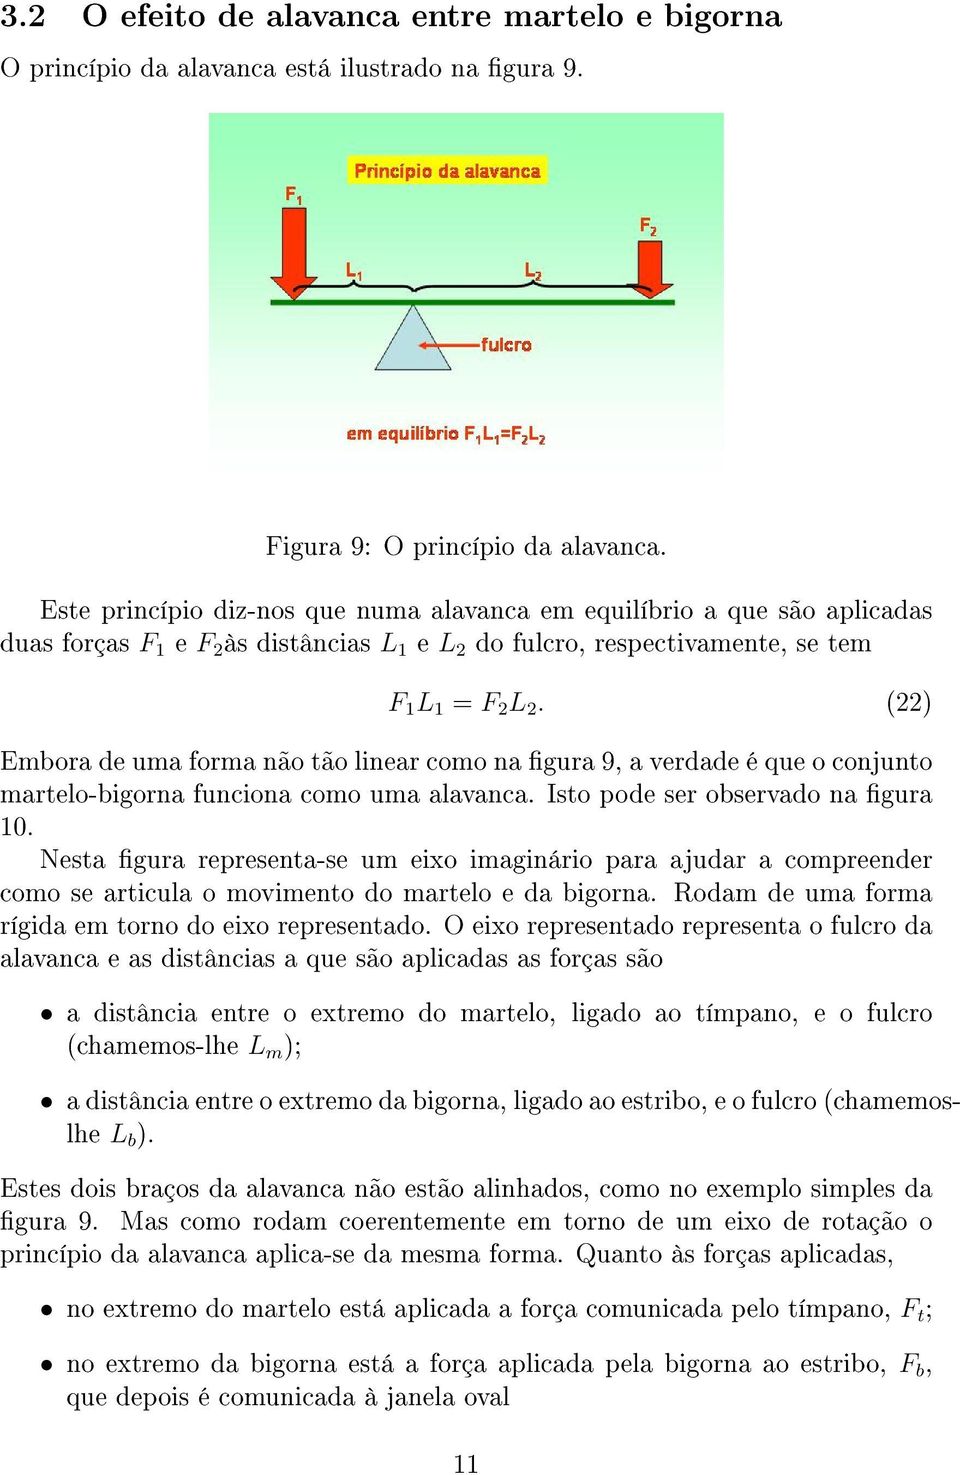 (22) Embora de uma forma não tão linear como na gura 9, a verdade é que o conjunto martelo-bigorna funciona como uma alavanca. Isto pode ser observado na gura 10.